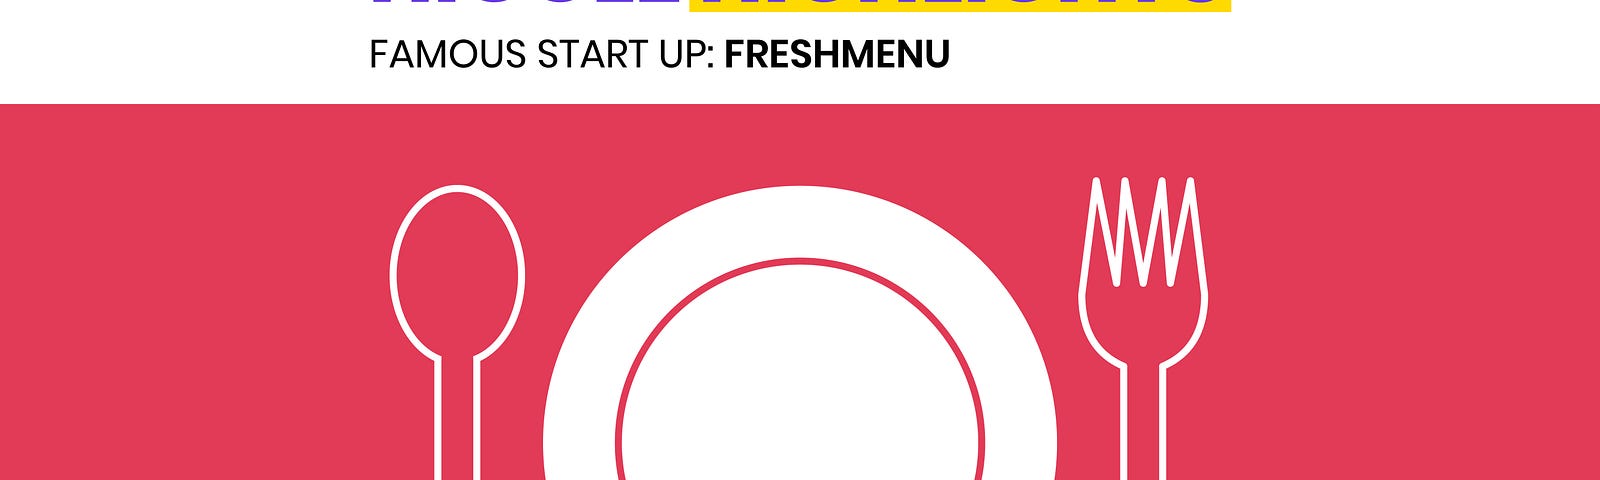 Famous Startup FreshMenu